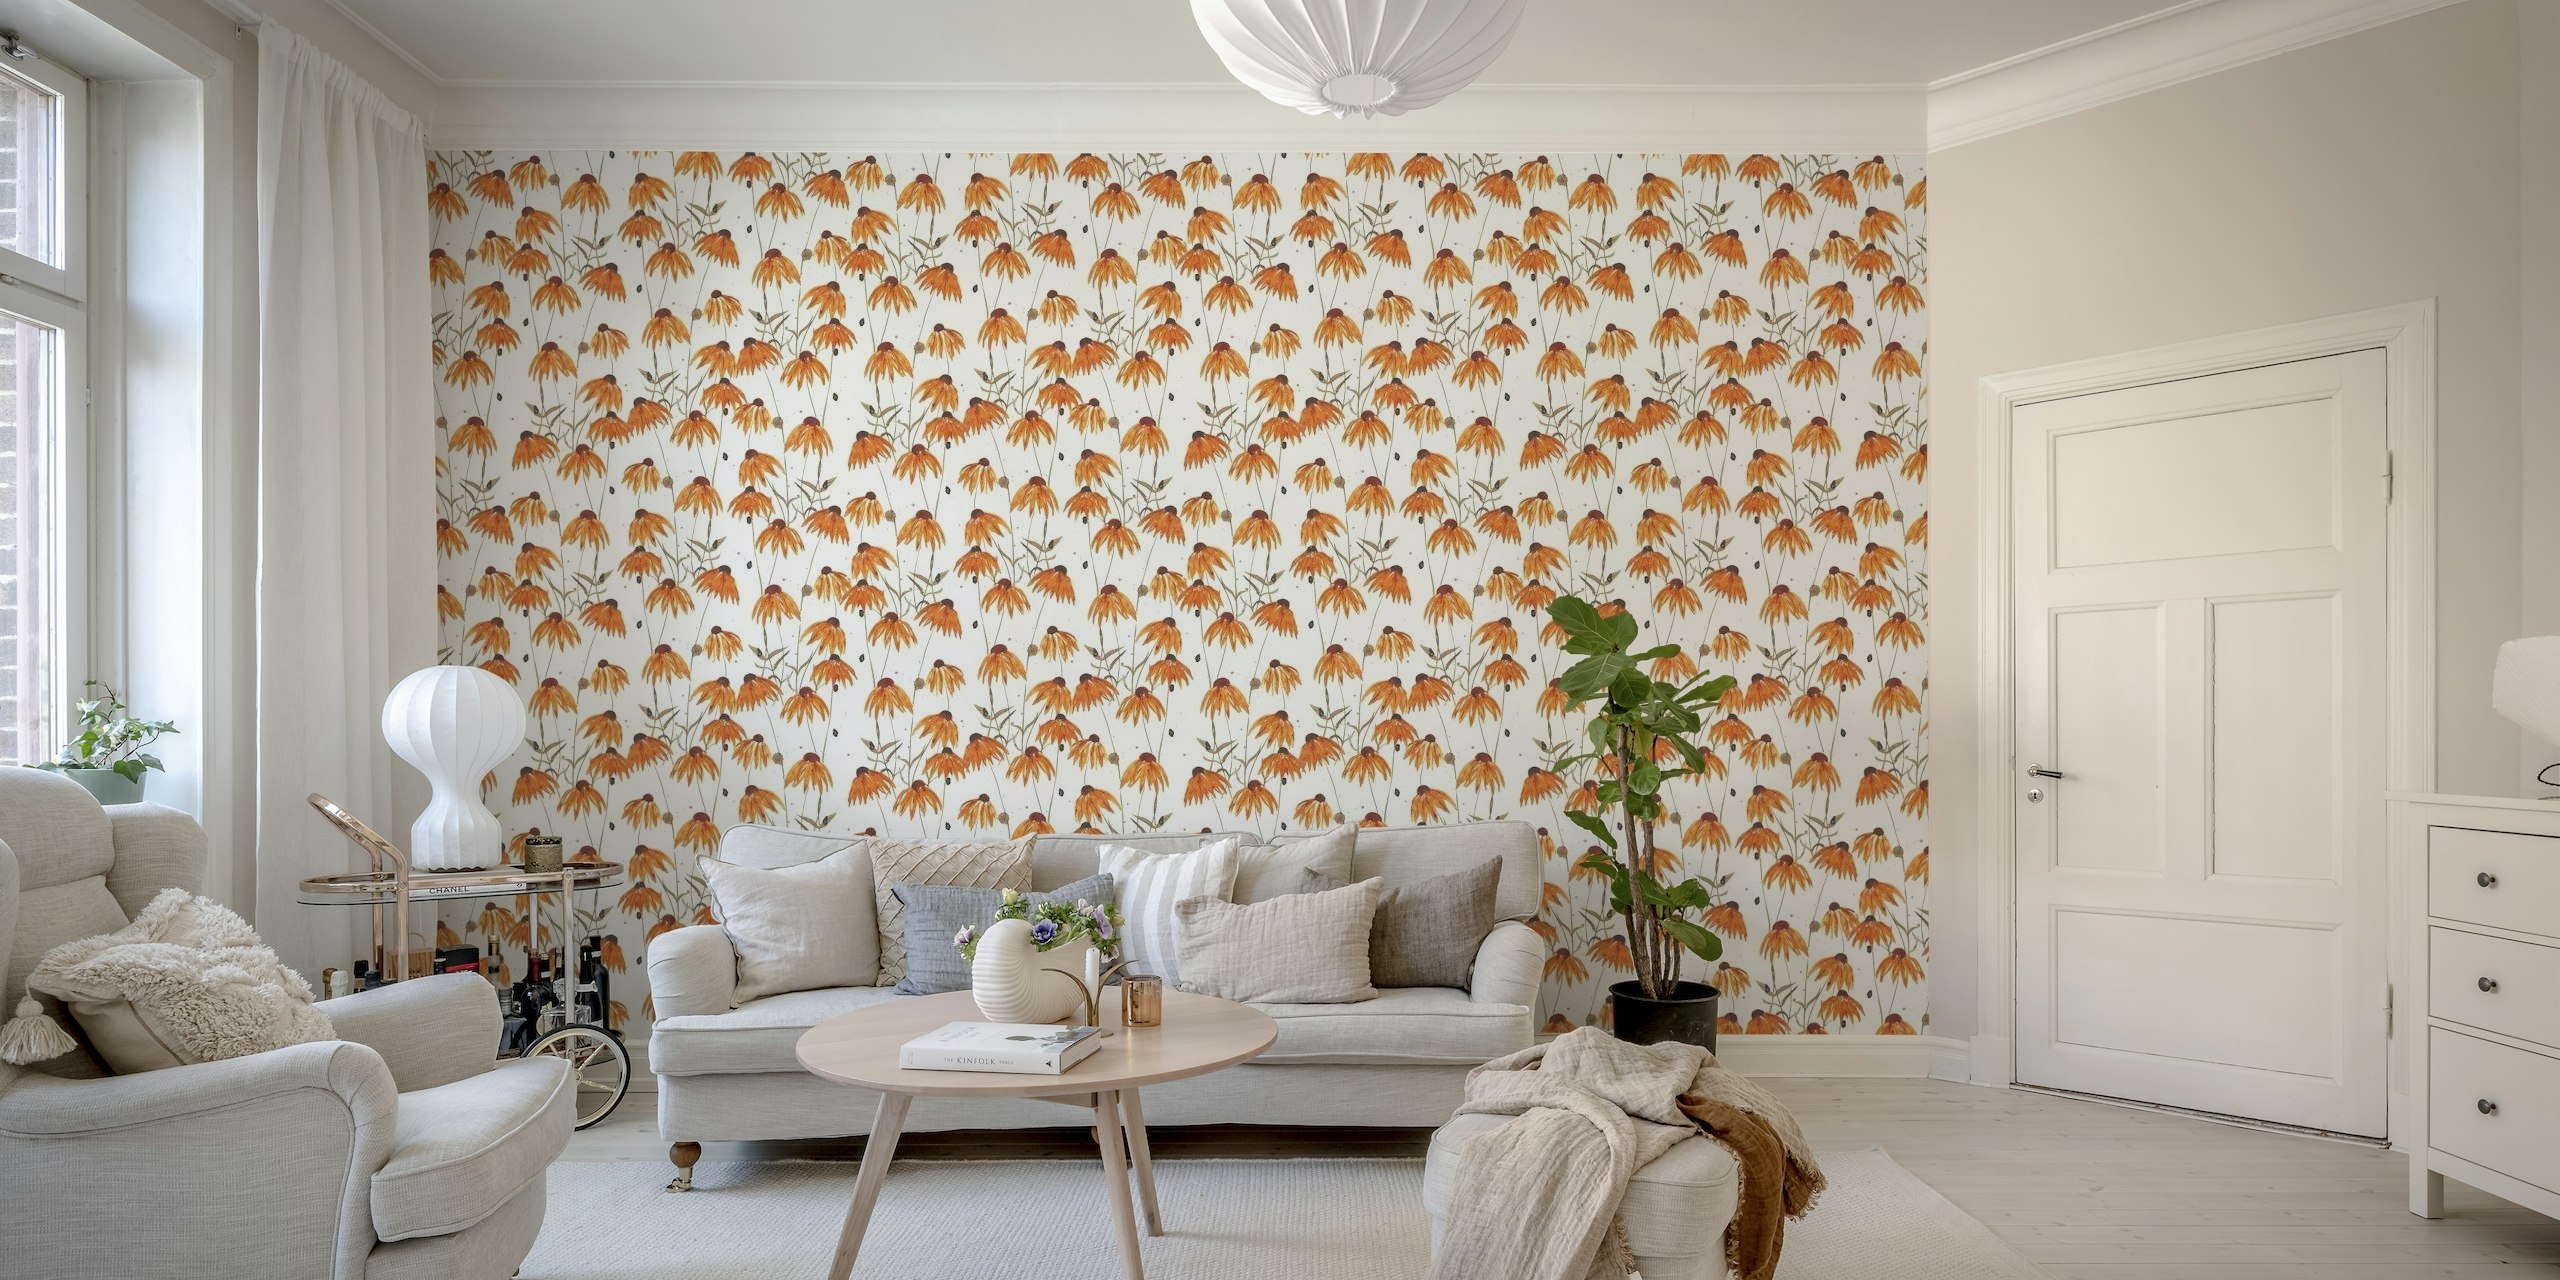 Mural de parede Orange Coneflowers com um padrão de flores coloridas em um fundo branco limpo